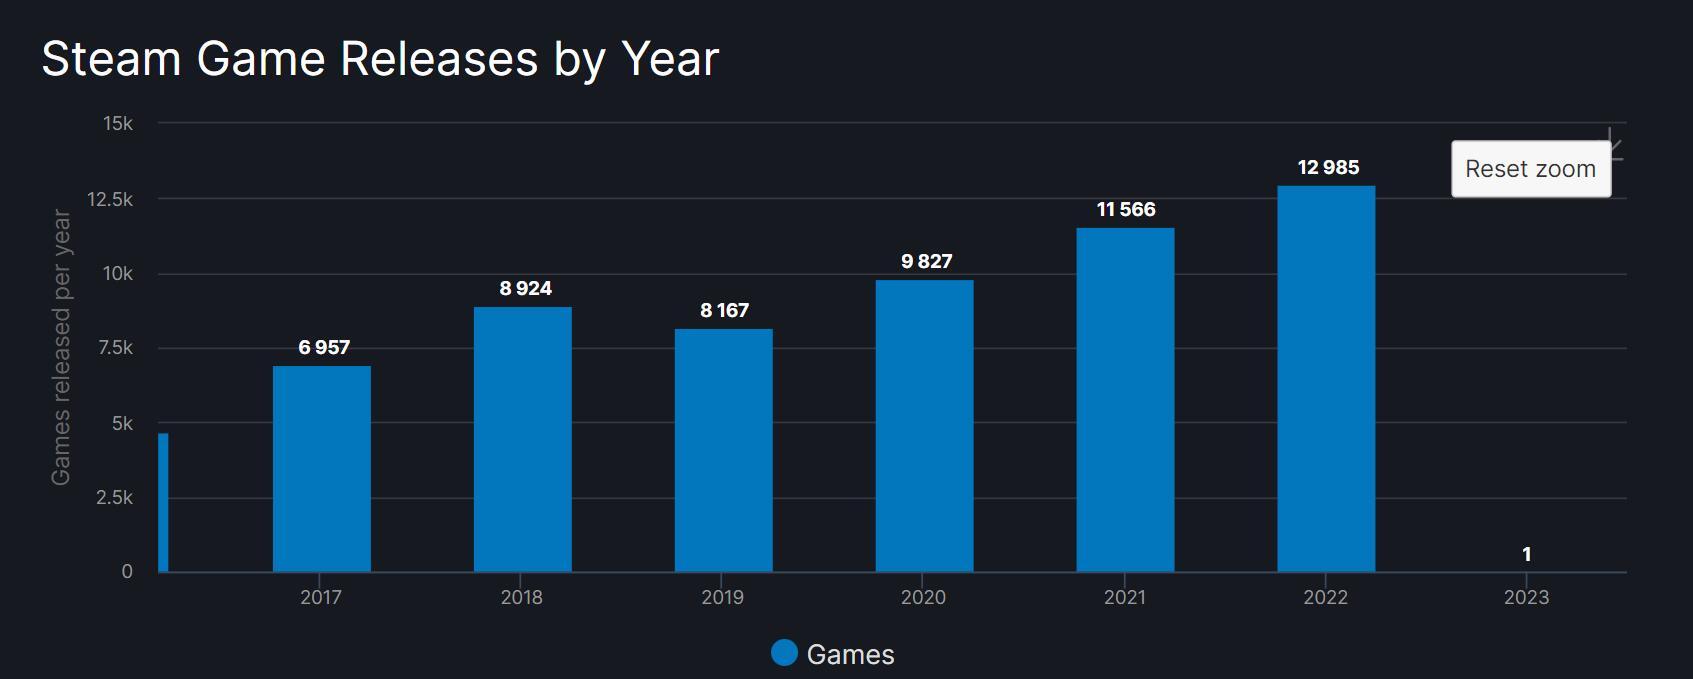 2022年Steam总共推出12985款新游戏！10月份最热闹